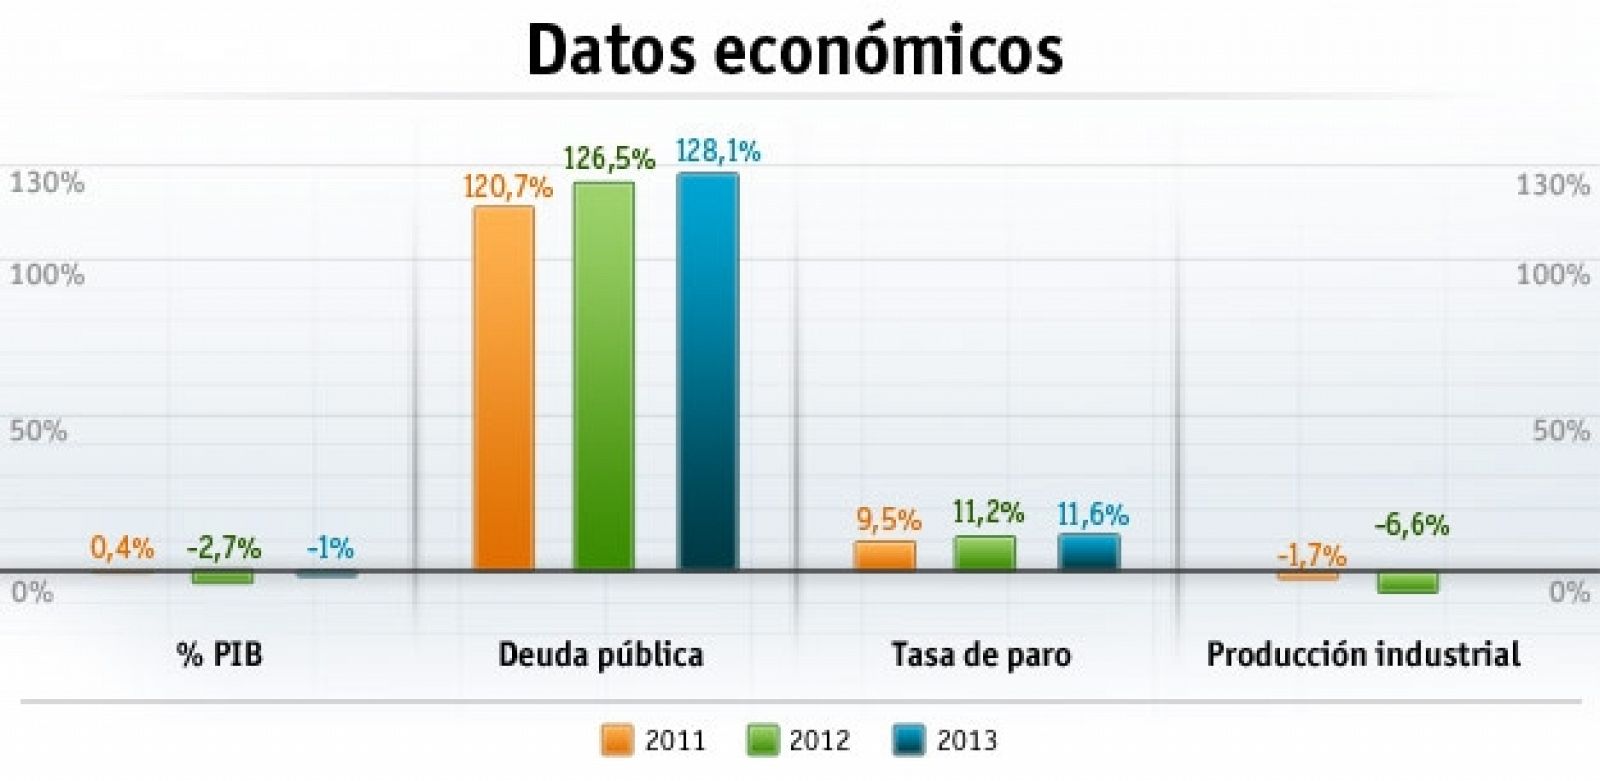 Datos económicos de Italia en 2011, 2012 y 2013